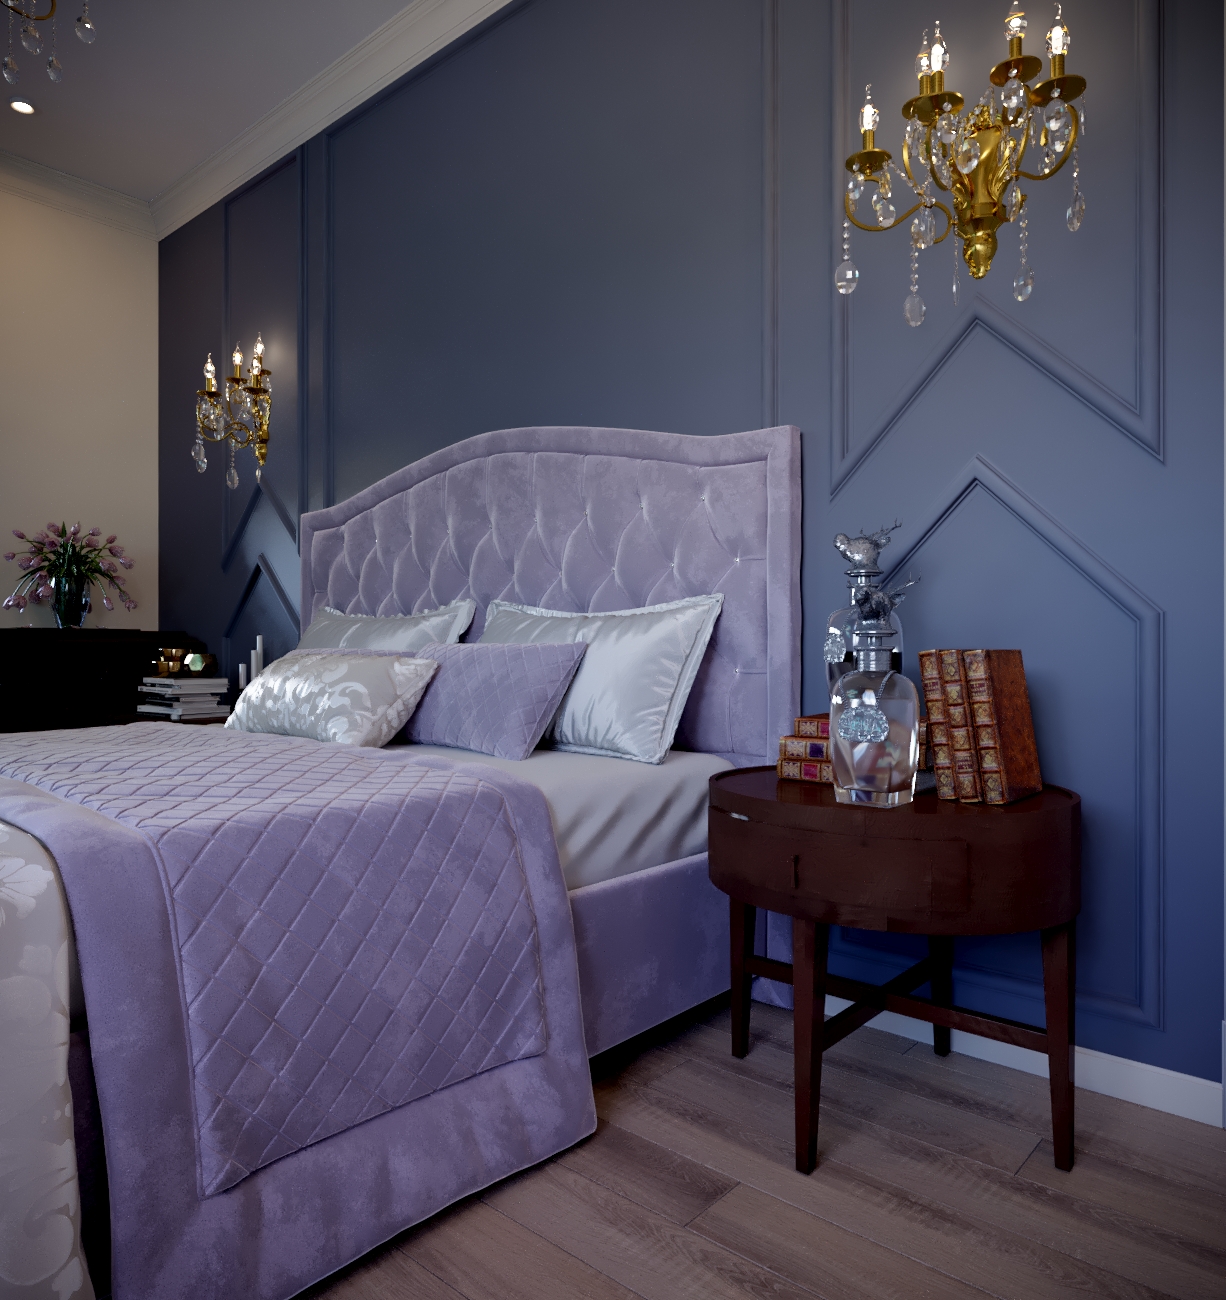 3d rendering of the bedroom in 3d max corona render image